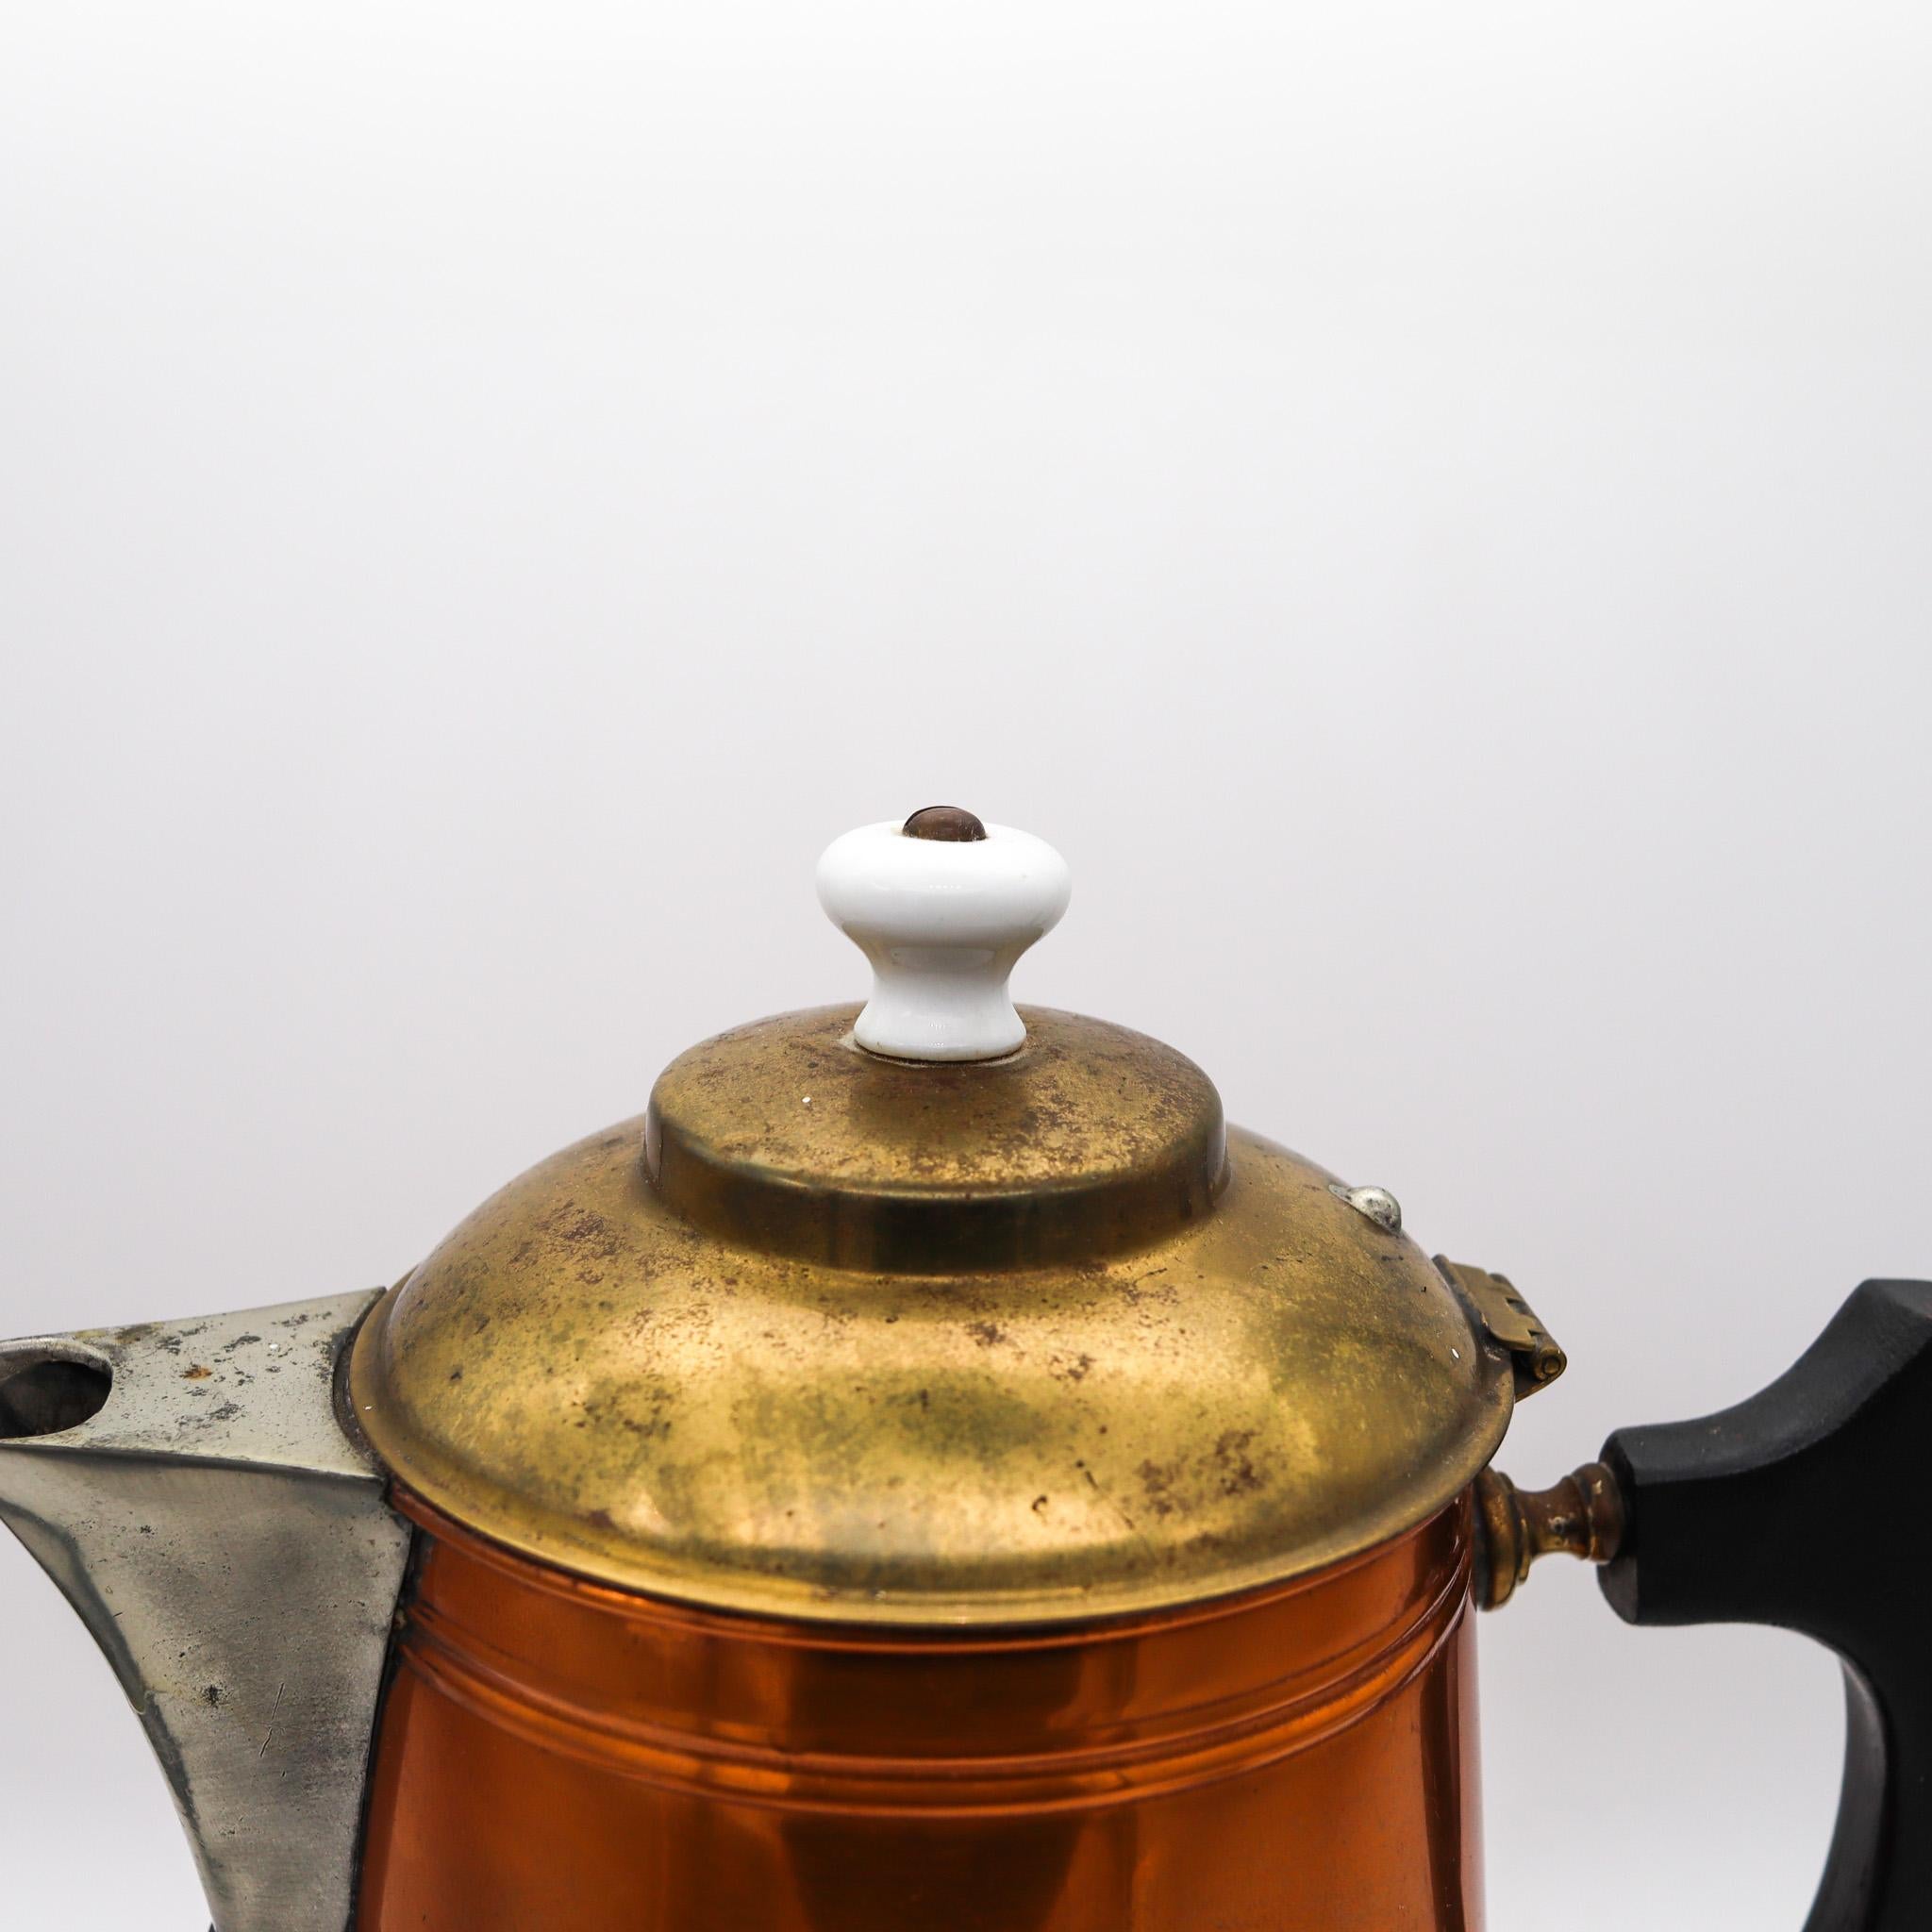 Ein Krug aus dem Industriezeitalter, entworfen von Manning Bowman Co.

Eine Kaffee-/Teekanne aus dem Industriezeitalter, die im nordamerikanischen Connecticut von der Manning Bowman Company Ende 1899 hergestellt wurde. Gefertigt mit